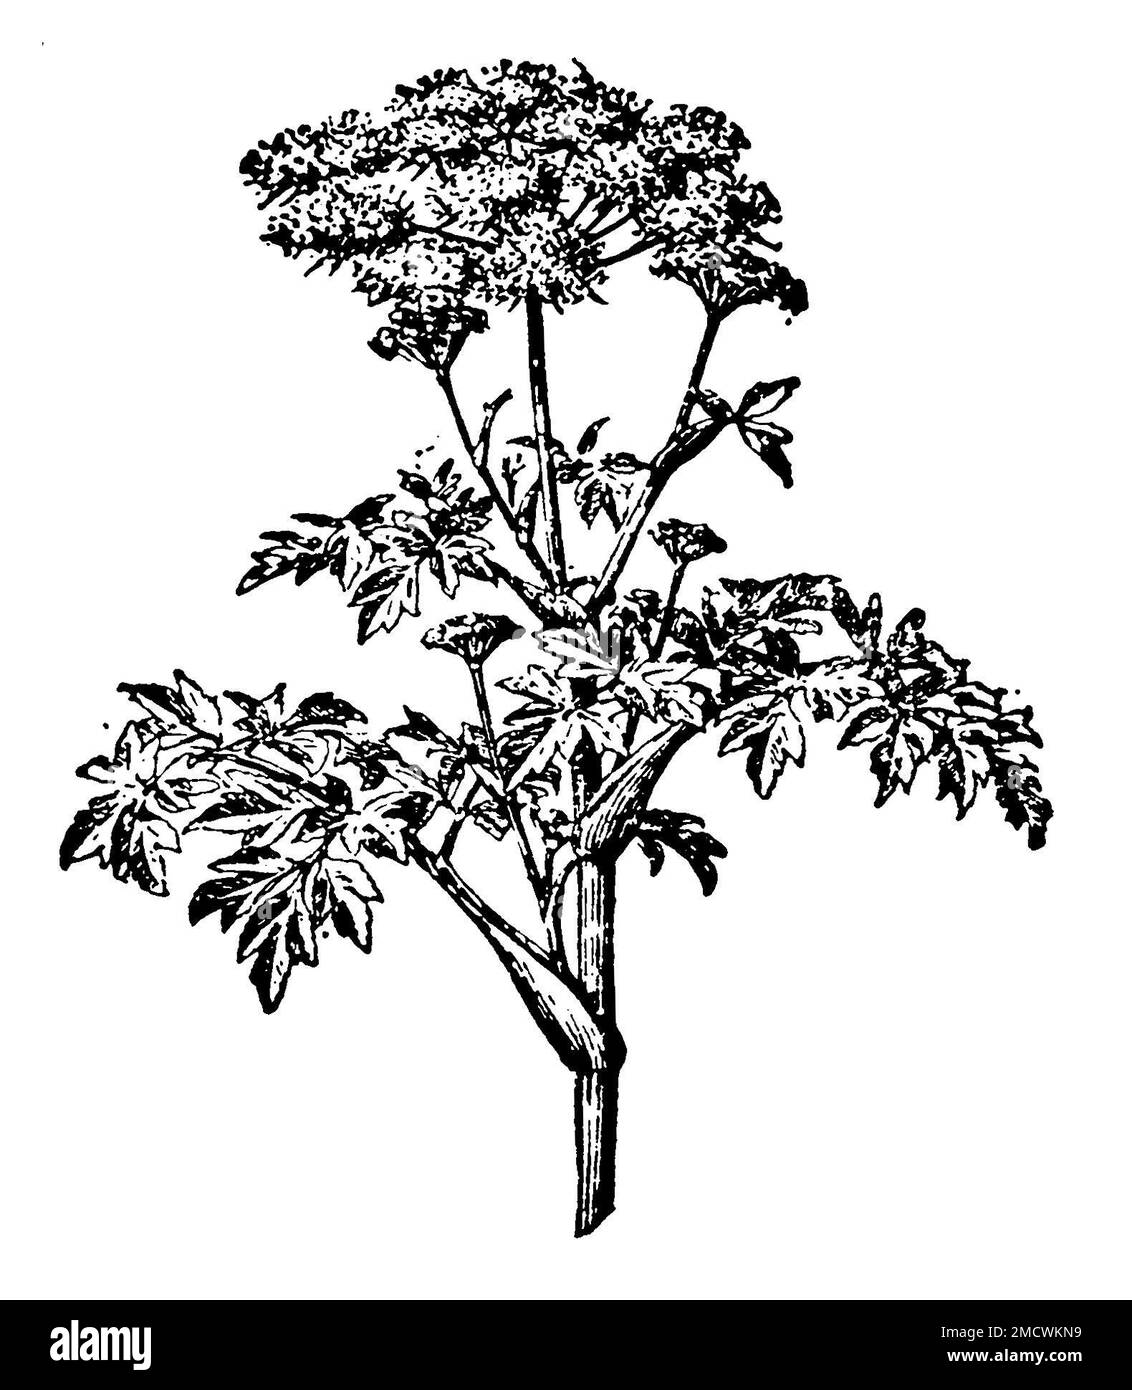 jardin angelica, Angelica archangelica Syn. Angelica officinalis, (encyclopédie, 1910), Arznei-Engelwurz oder Echte Engelwurz, angélique vraie Banque D'Images